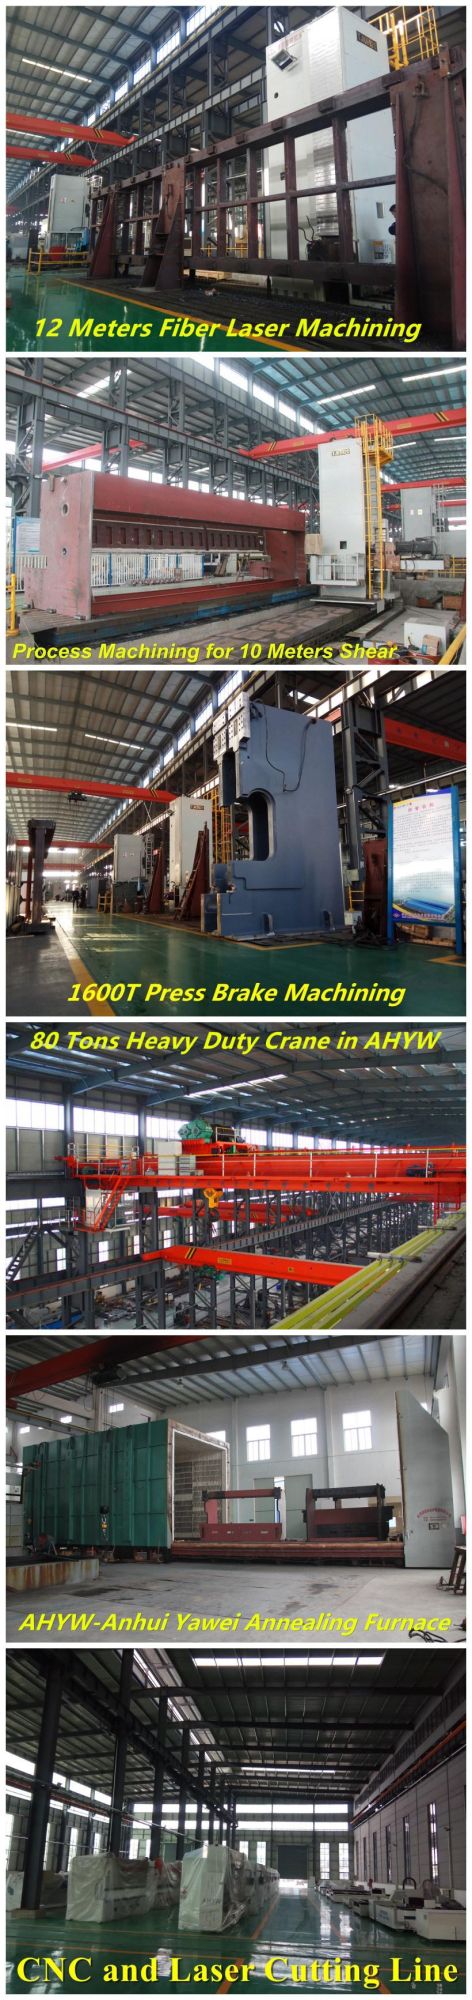 Power Shearing Machine From Anhui Yawei with Ahyw Logo for Metal Sheet Cutting